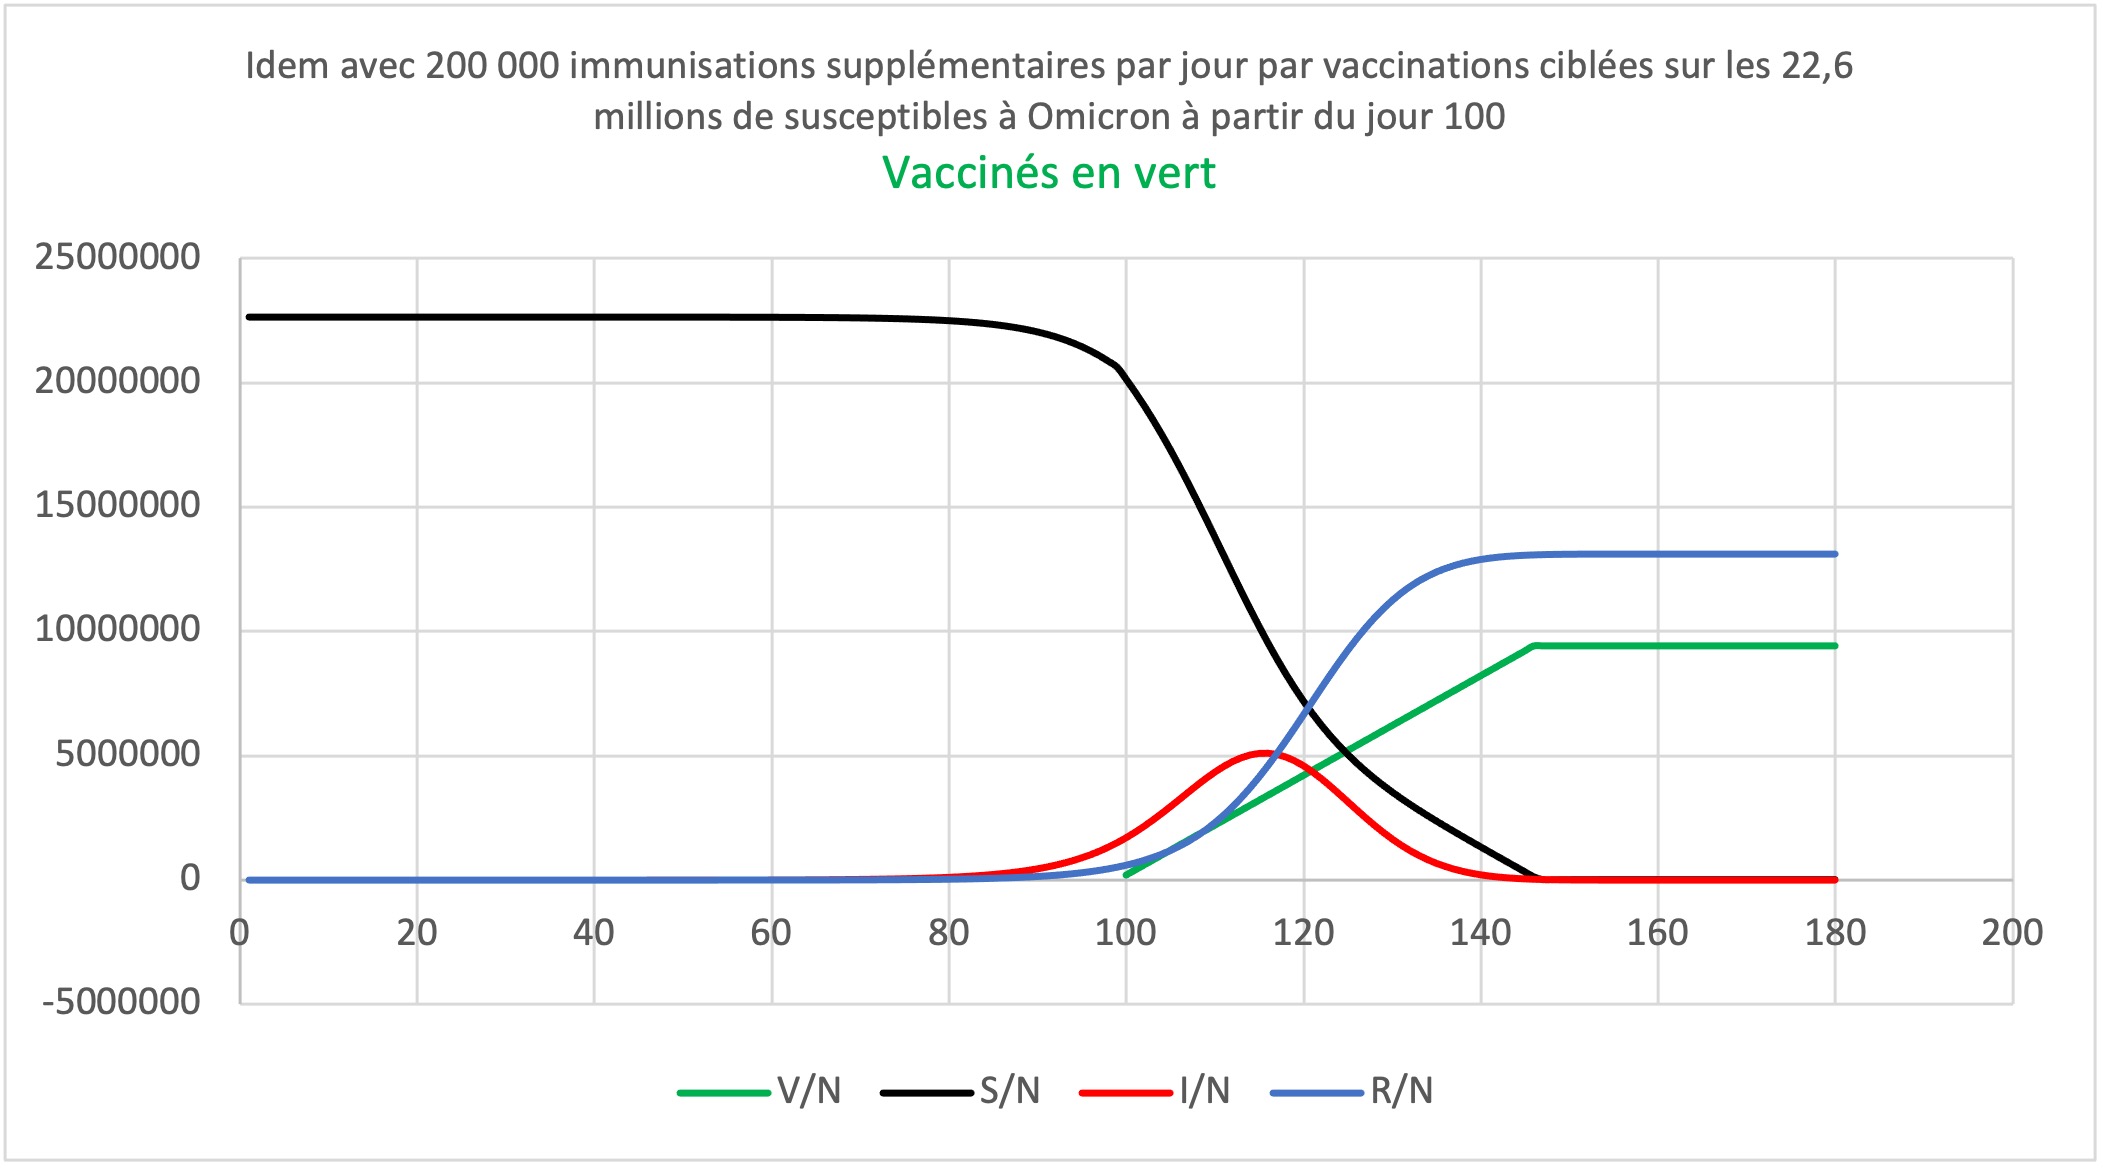 Omicron avec 200 000 immunisations supplémentaires par jour par vaccinations